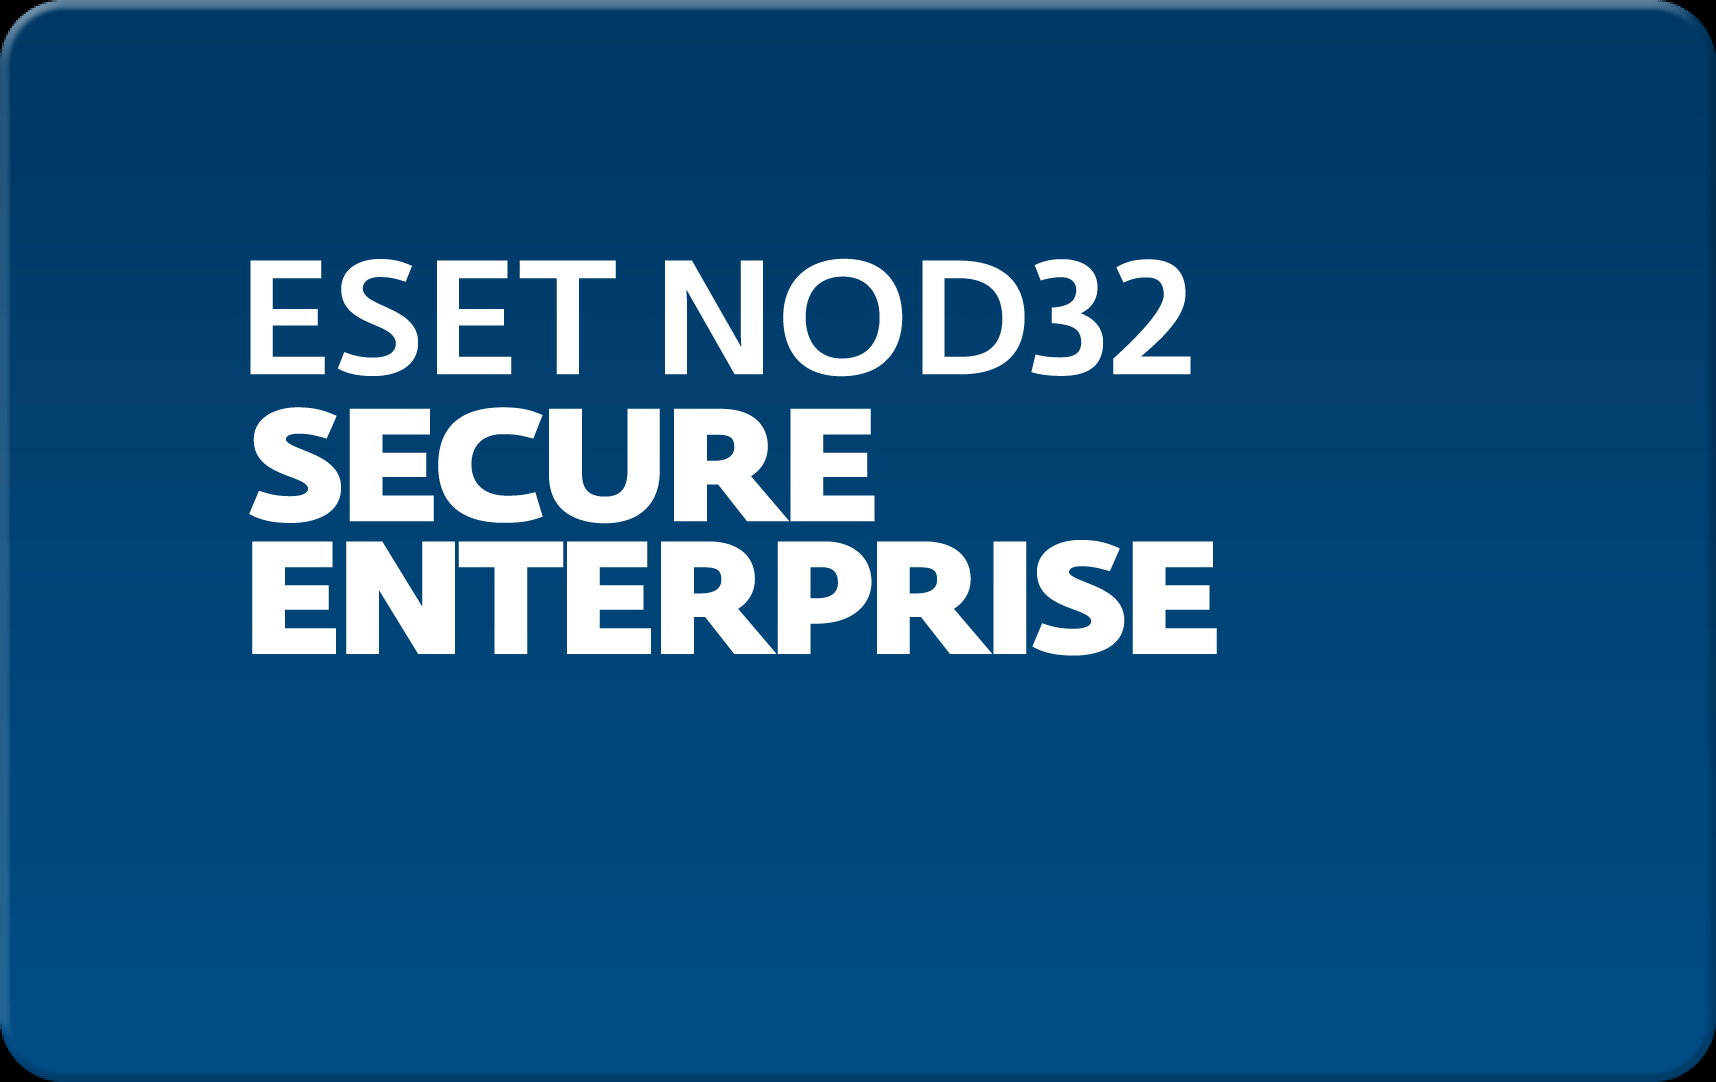        Eset NOD32 Secure Enterprise  164 